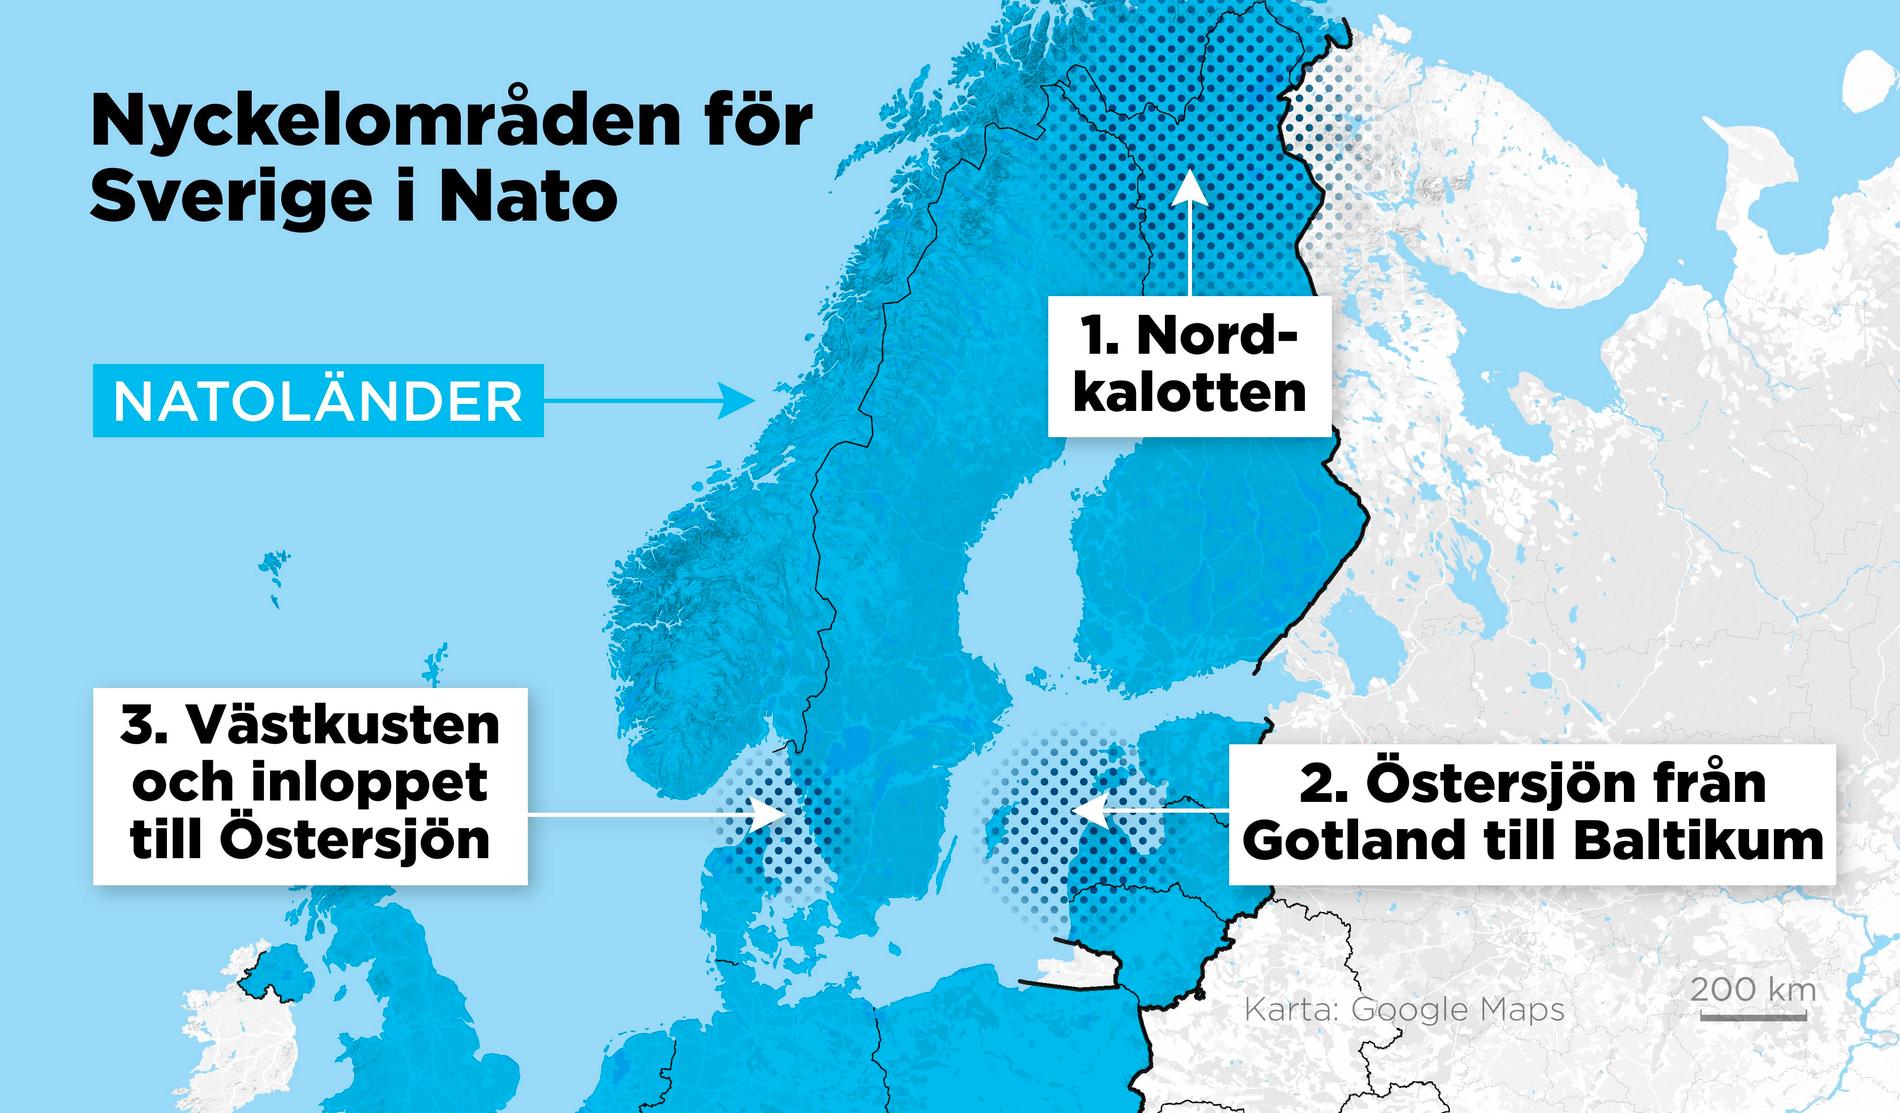 Om det blir krig mellan Nato och Ryssland får Sverige en viktig roll i försvaret av Finland och Baltikum och för att försvara transporter till grannländerna både till havs och på land.